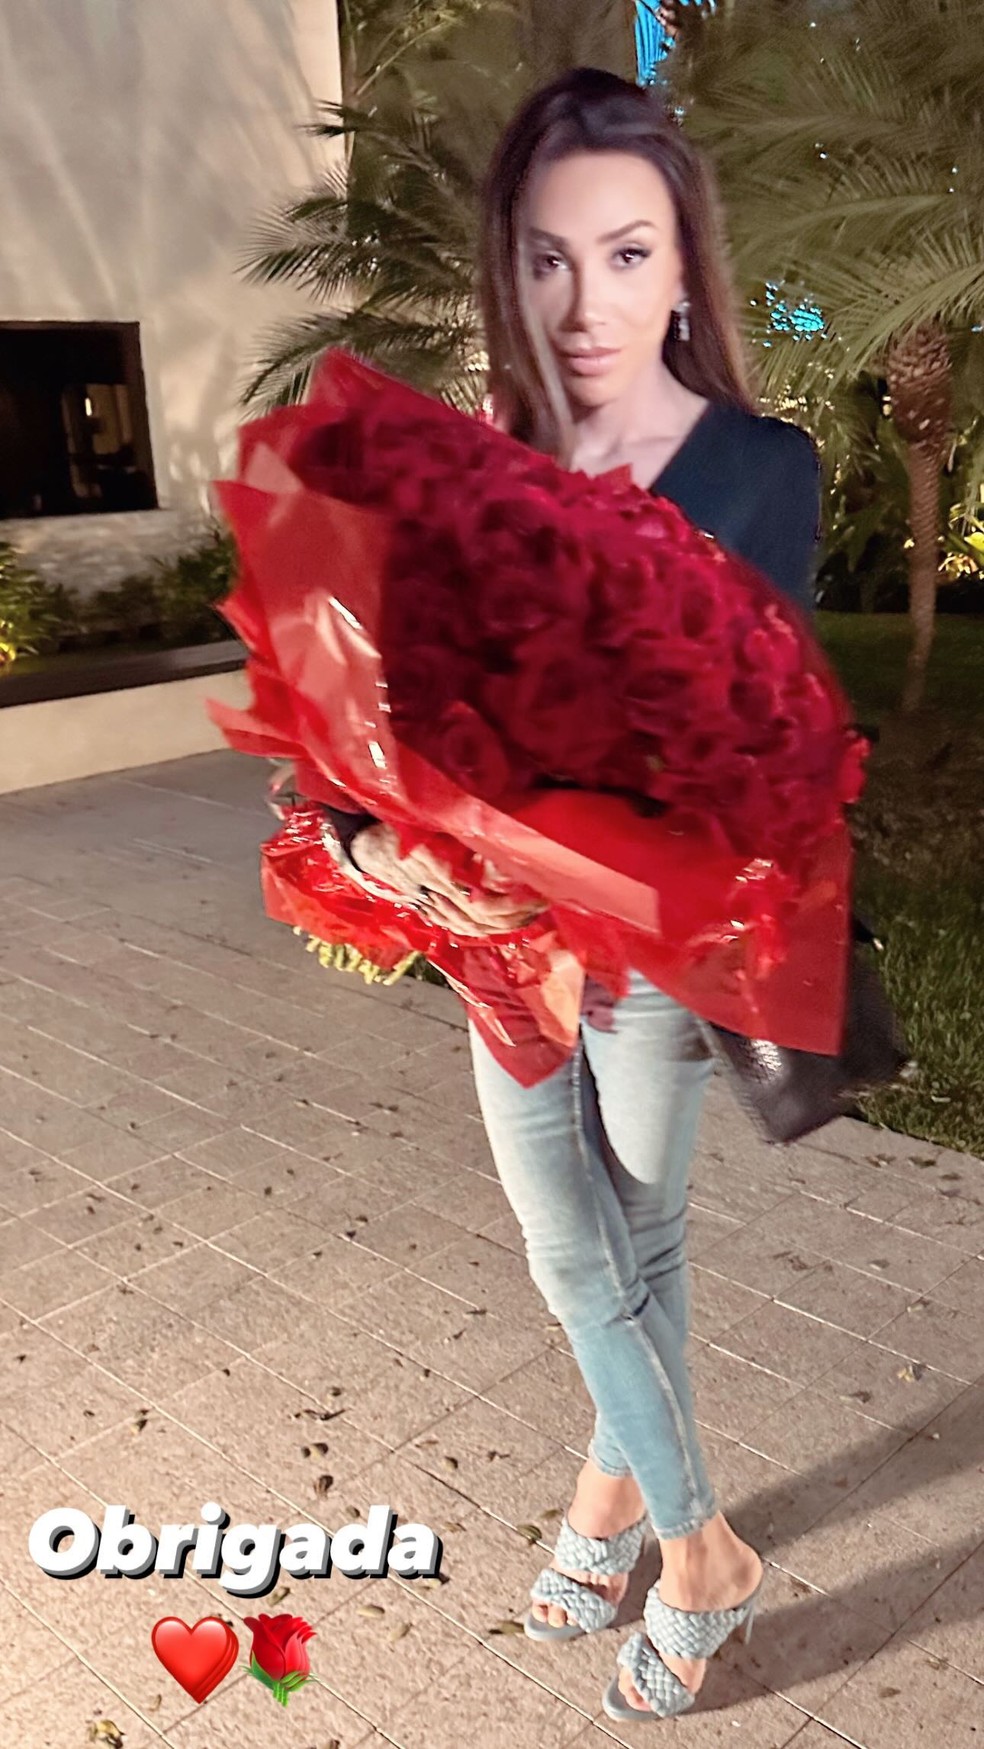 Maya Massafera ganhou buquê de rosas que teria sido enviado por ator da Globo — Foto: Reprodução Instagram